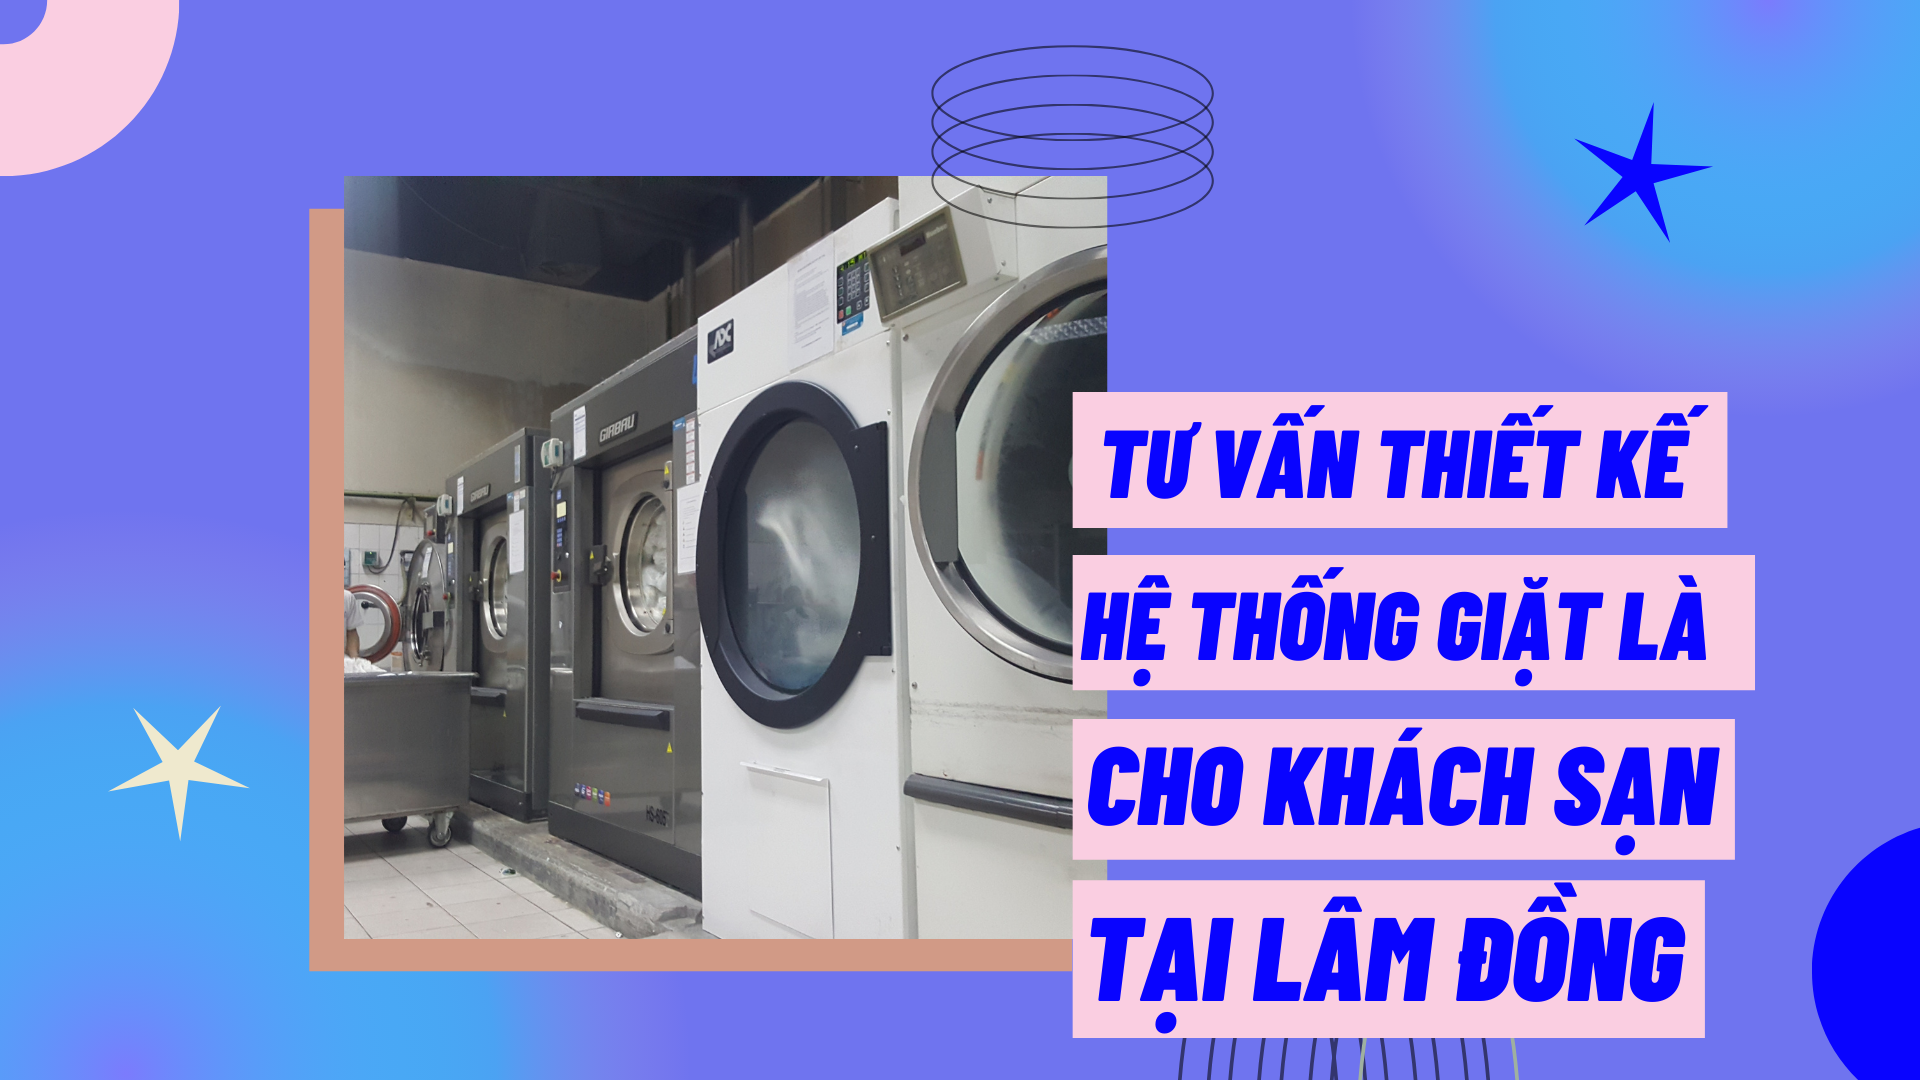 Tư vấn thiết kế hệ thống giặt là cho khách sạn tại Lâm Đồng